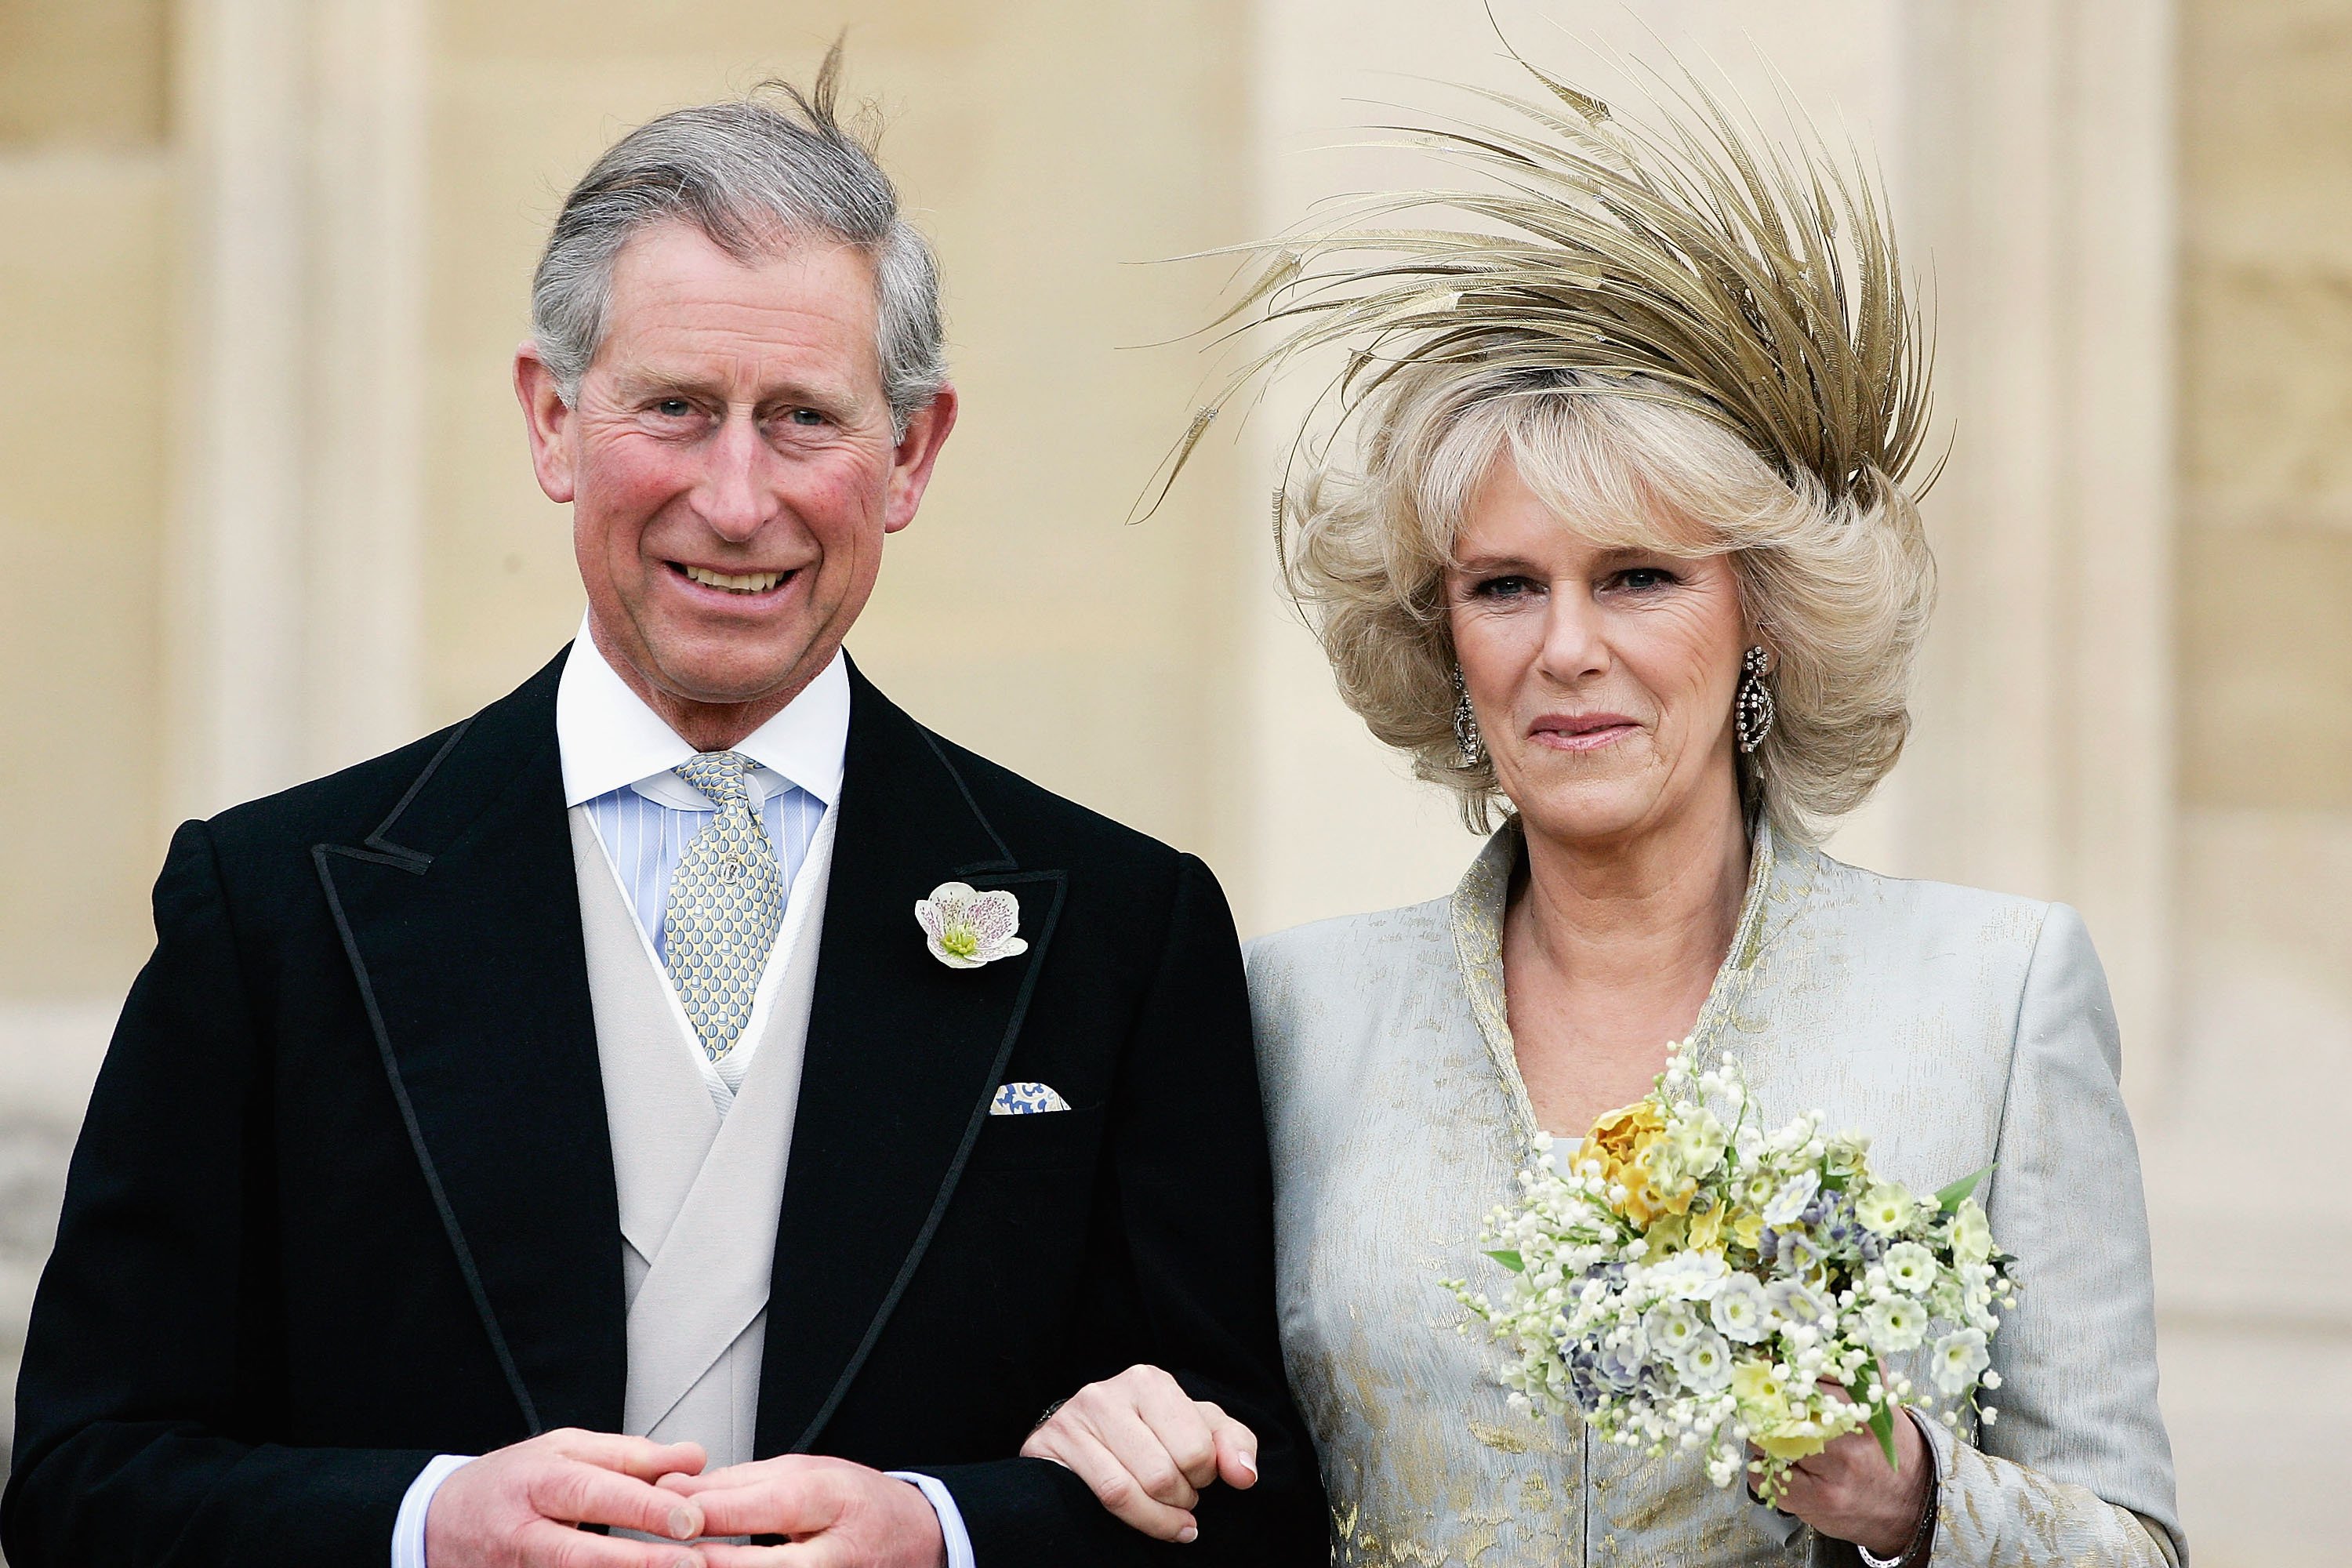 El príncipe Charles y Camilla Parker Bowles, fotografiados en el Servicio de Oración y Dedicación, bendiciendo su matrimonio en abril de 2005, en el Castillo de Windsor, Inglaterra. | Foto: Getty Images